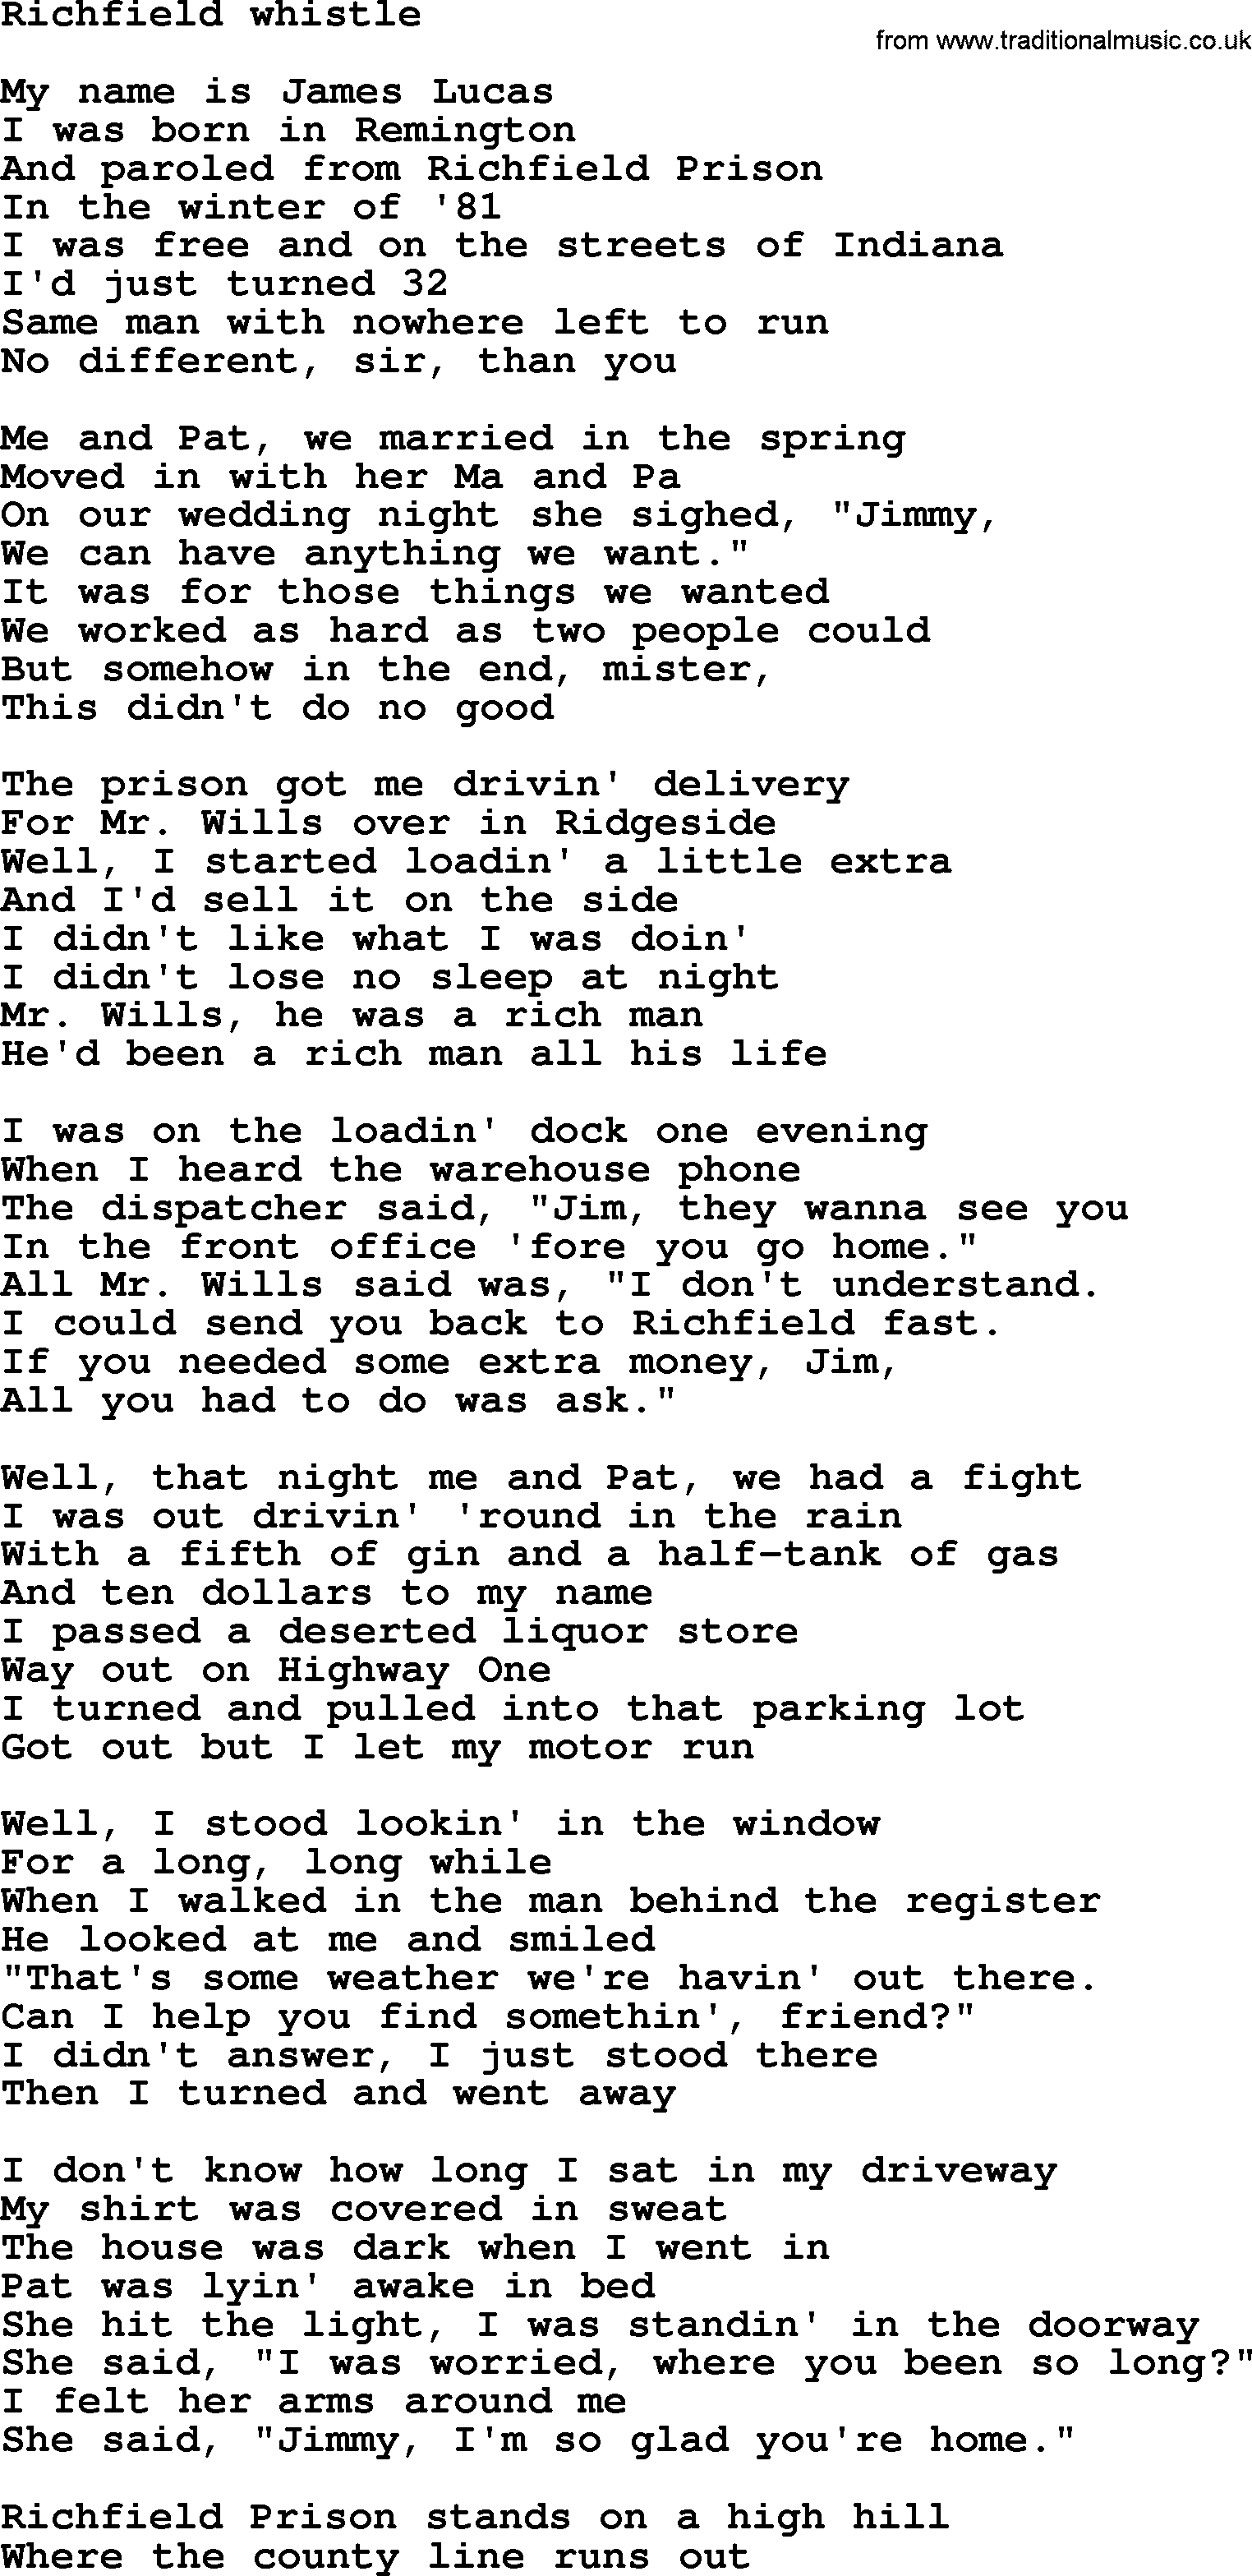 Bruce Springsteen song: Richfield Whistle lyrics